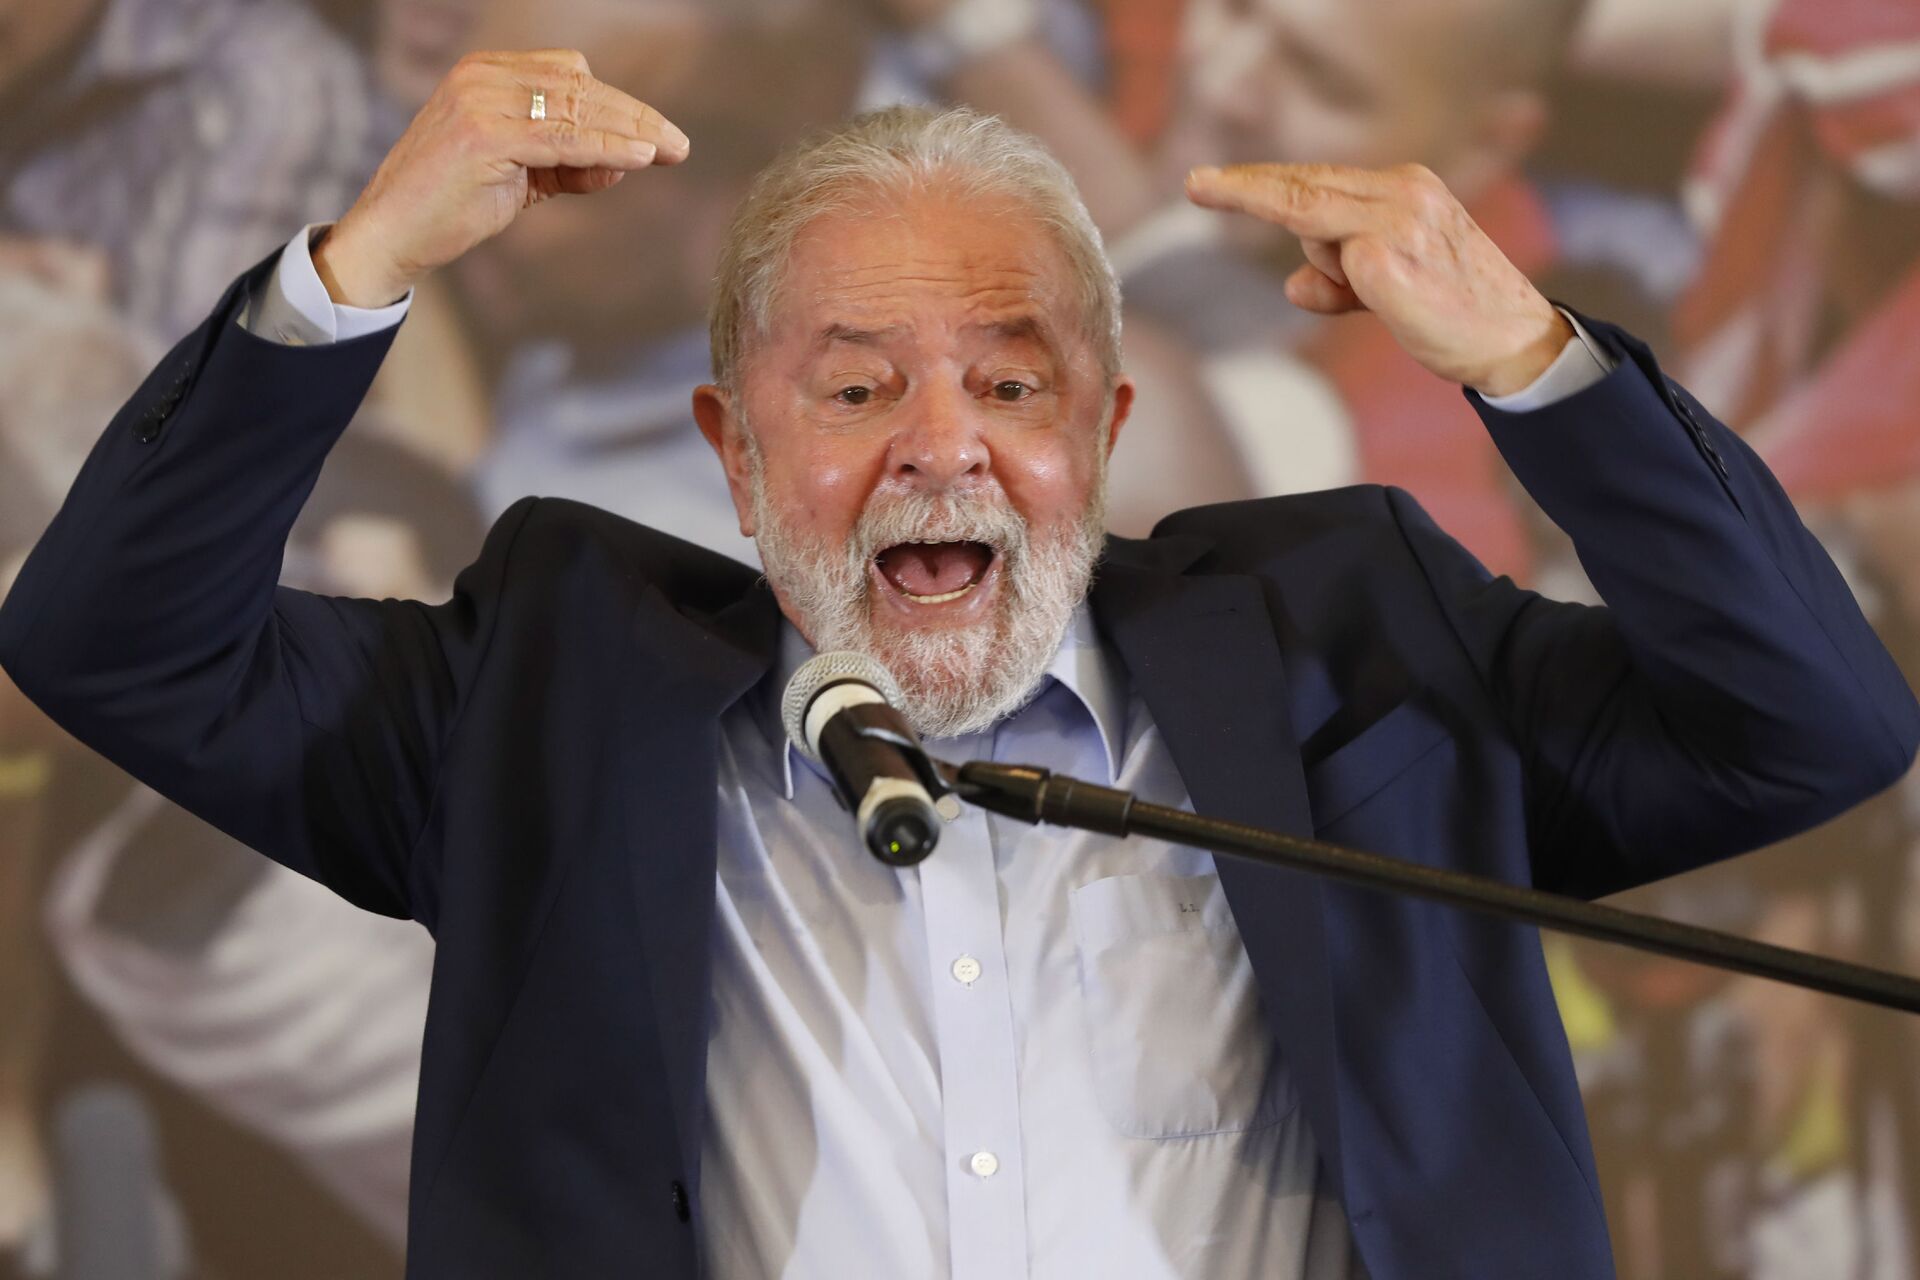 Cármen Lúcia muda o voto e Moro é declarado suspeito no caso Lula - Sputnik Brasil, 1920, 23.03.2021